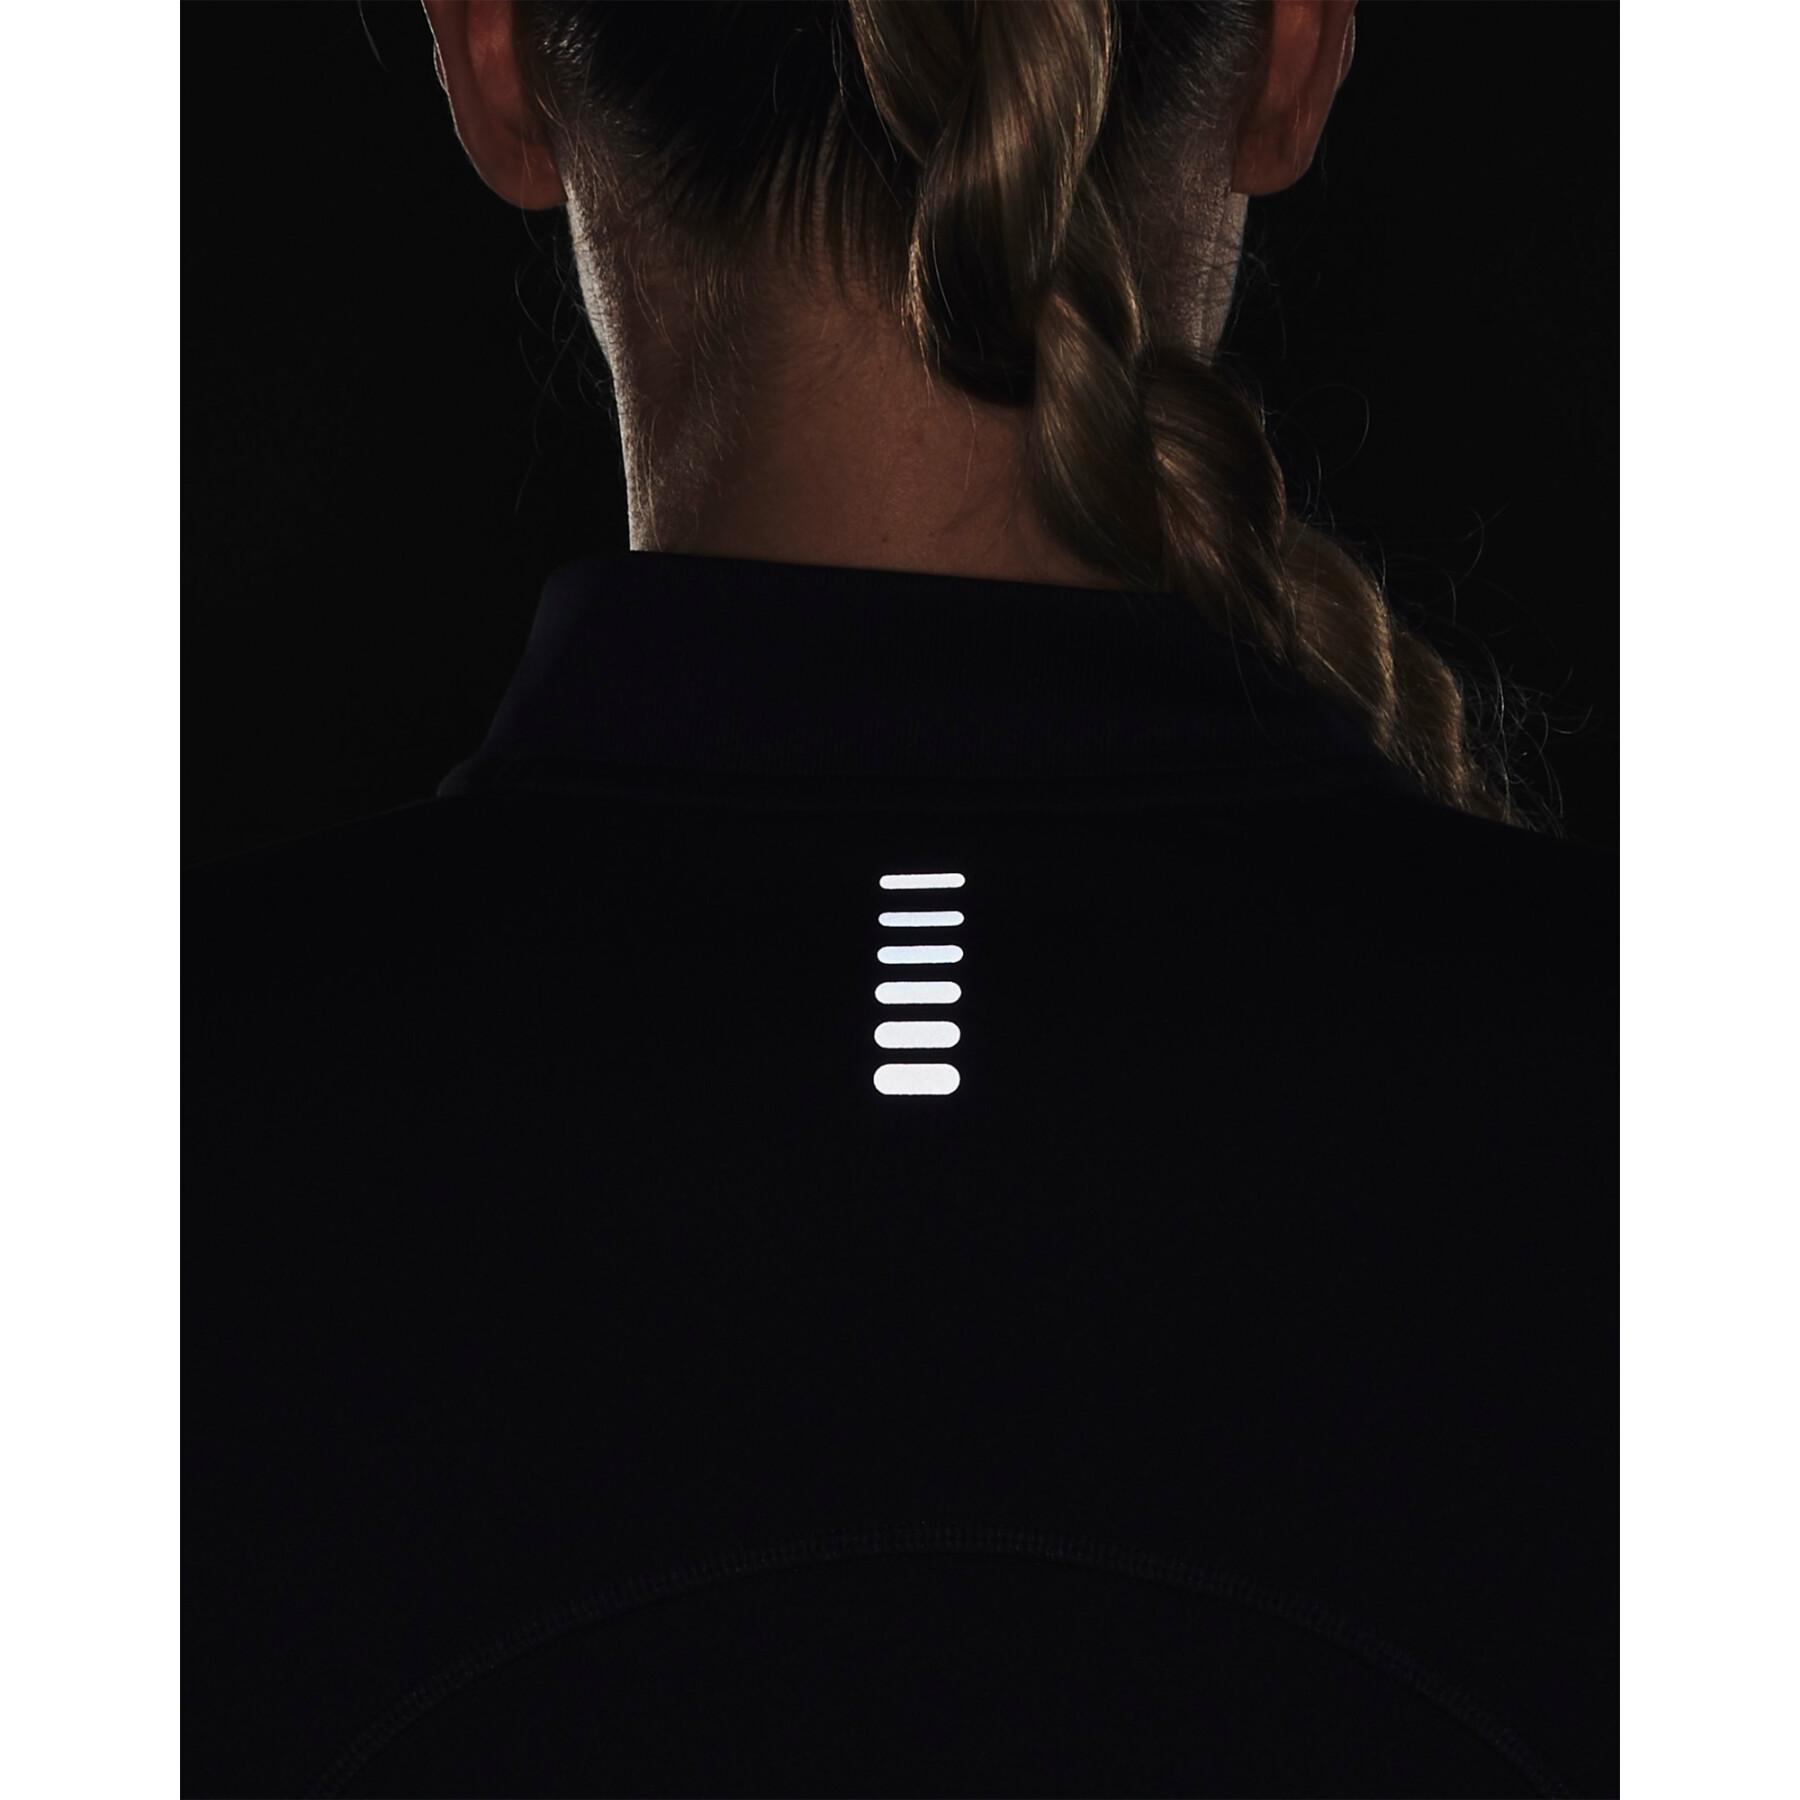 Damen Sweatshirt mit 1/2 Reißverschluss Under Armour Qualifier Run 2.0